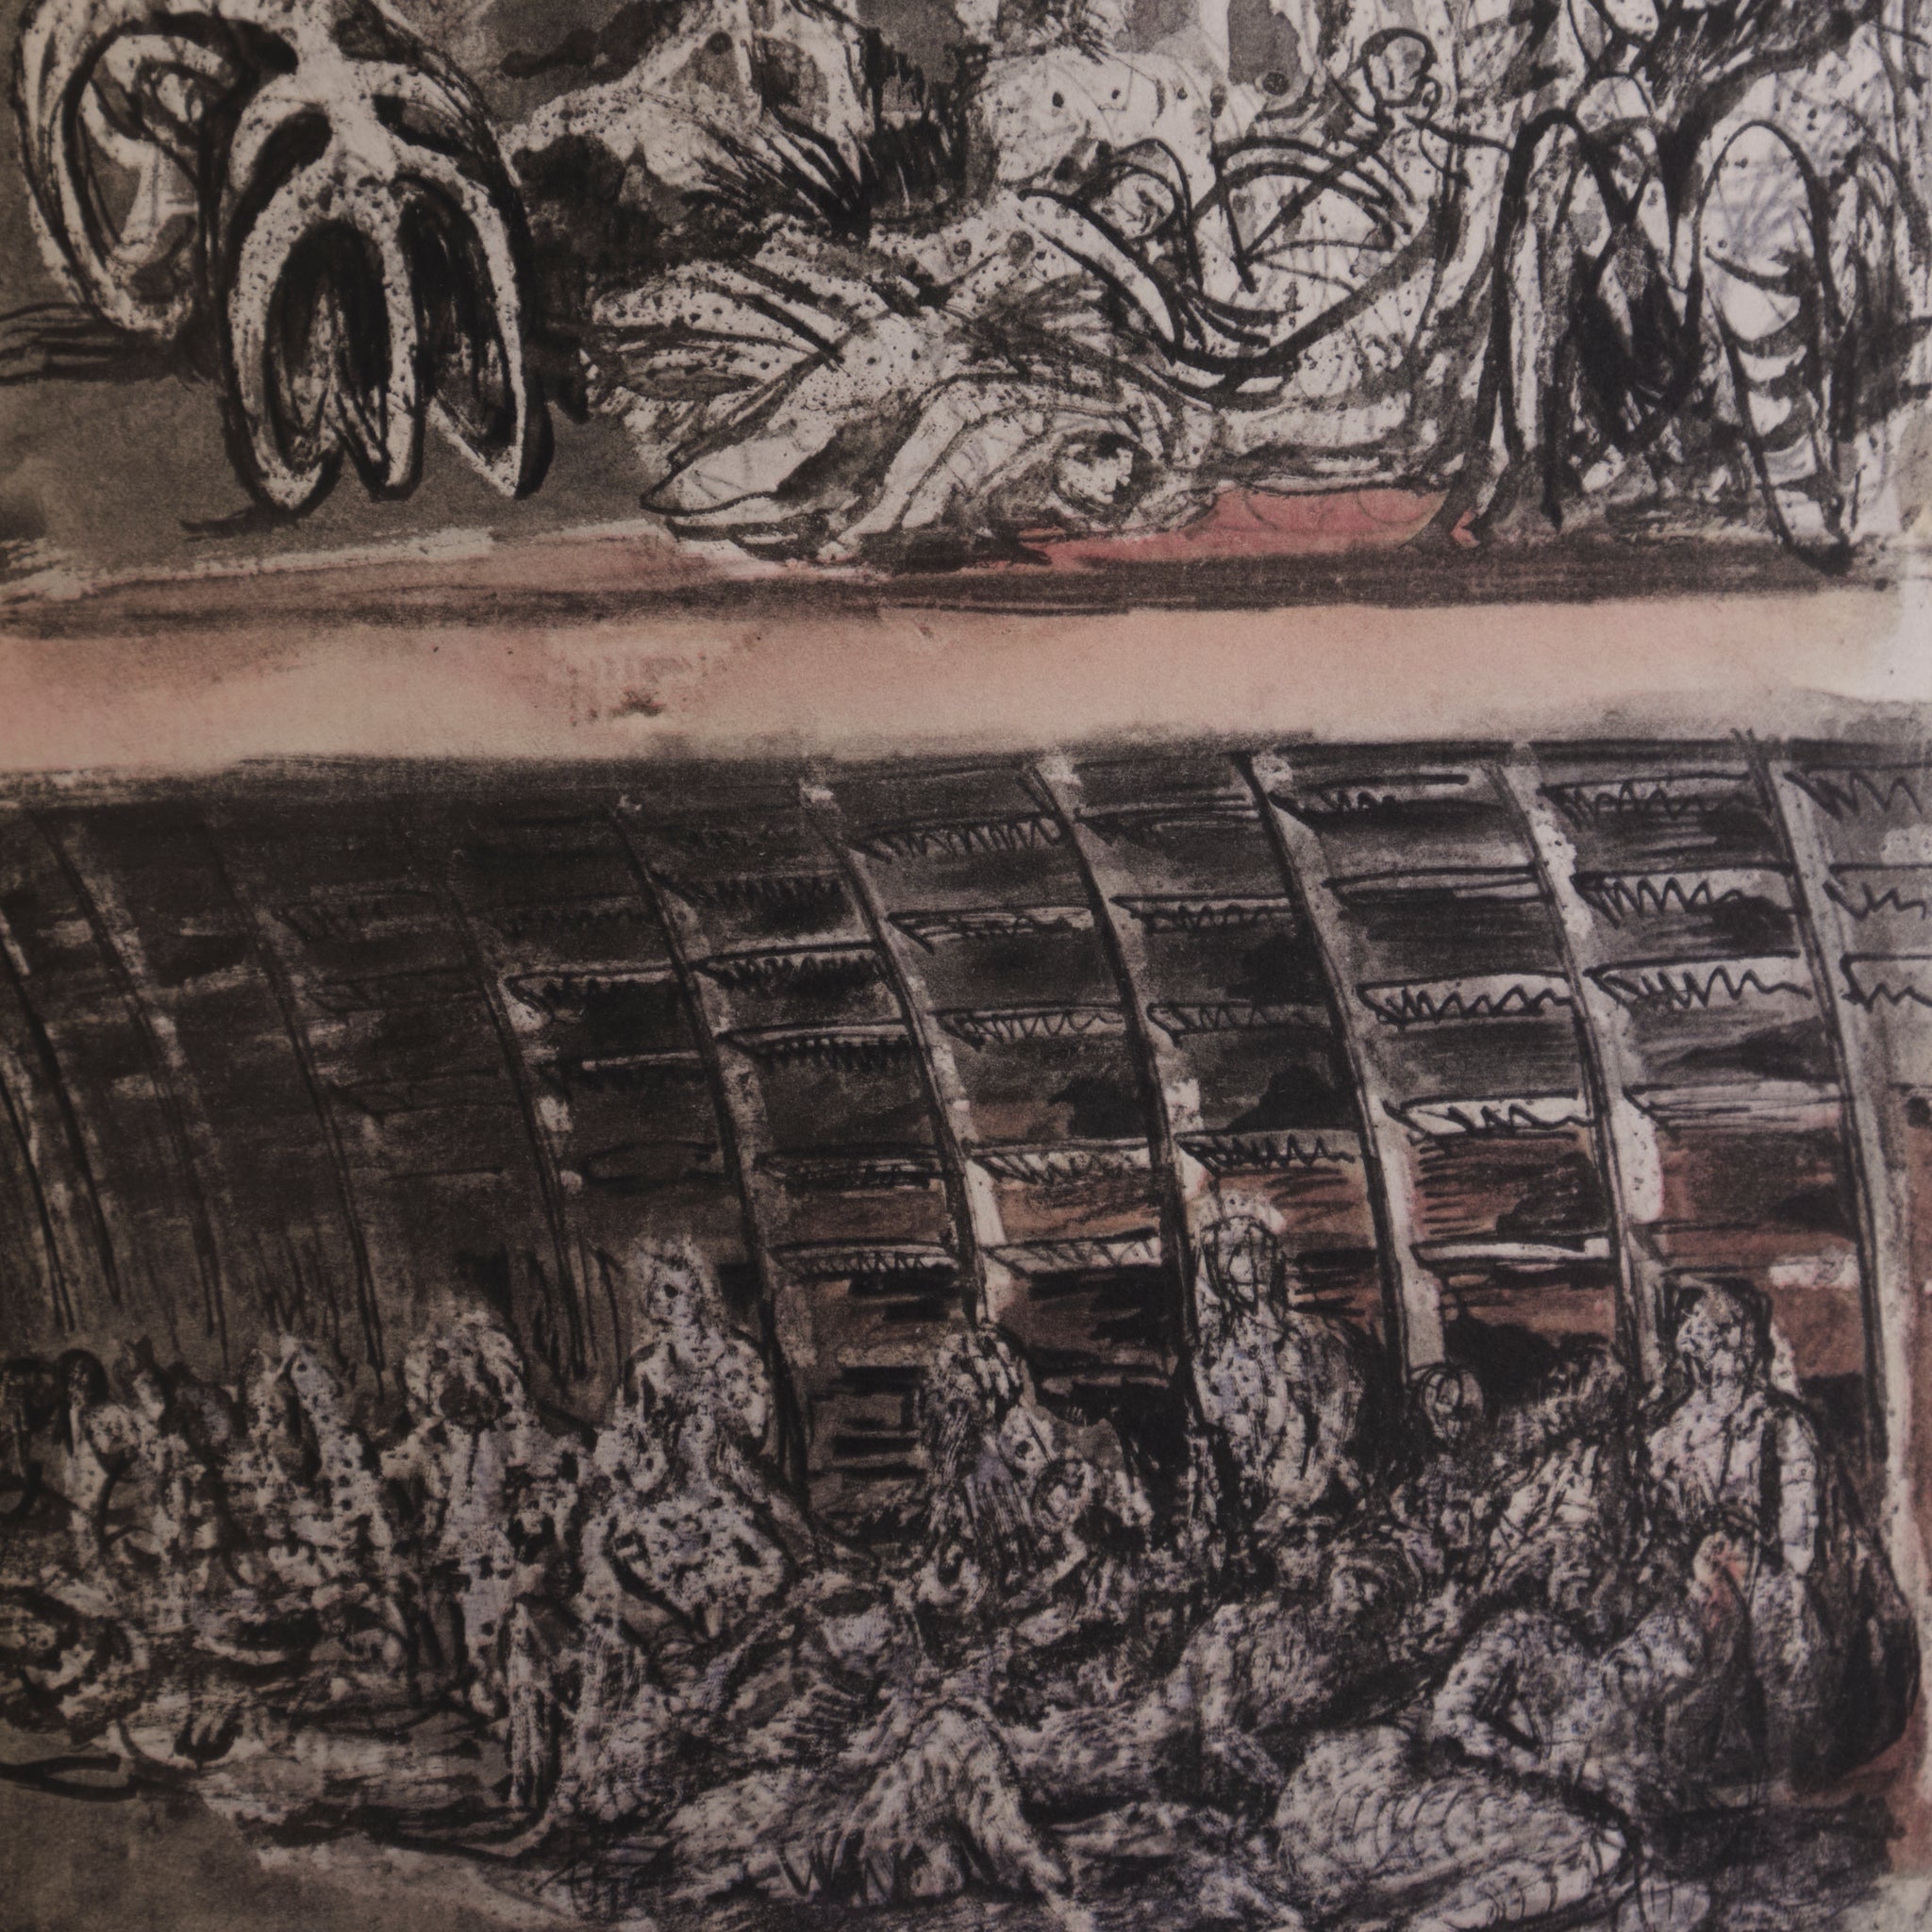 Henry Moore — Shelter Sketch Book